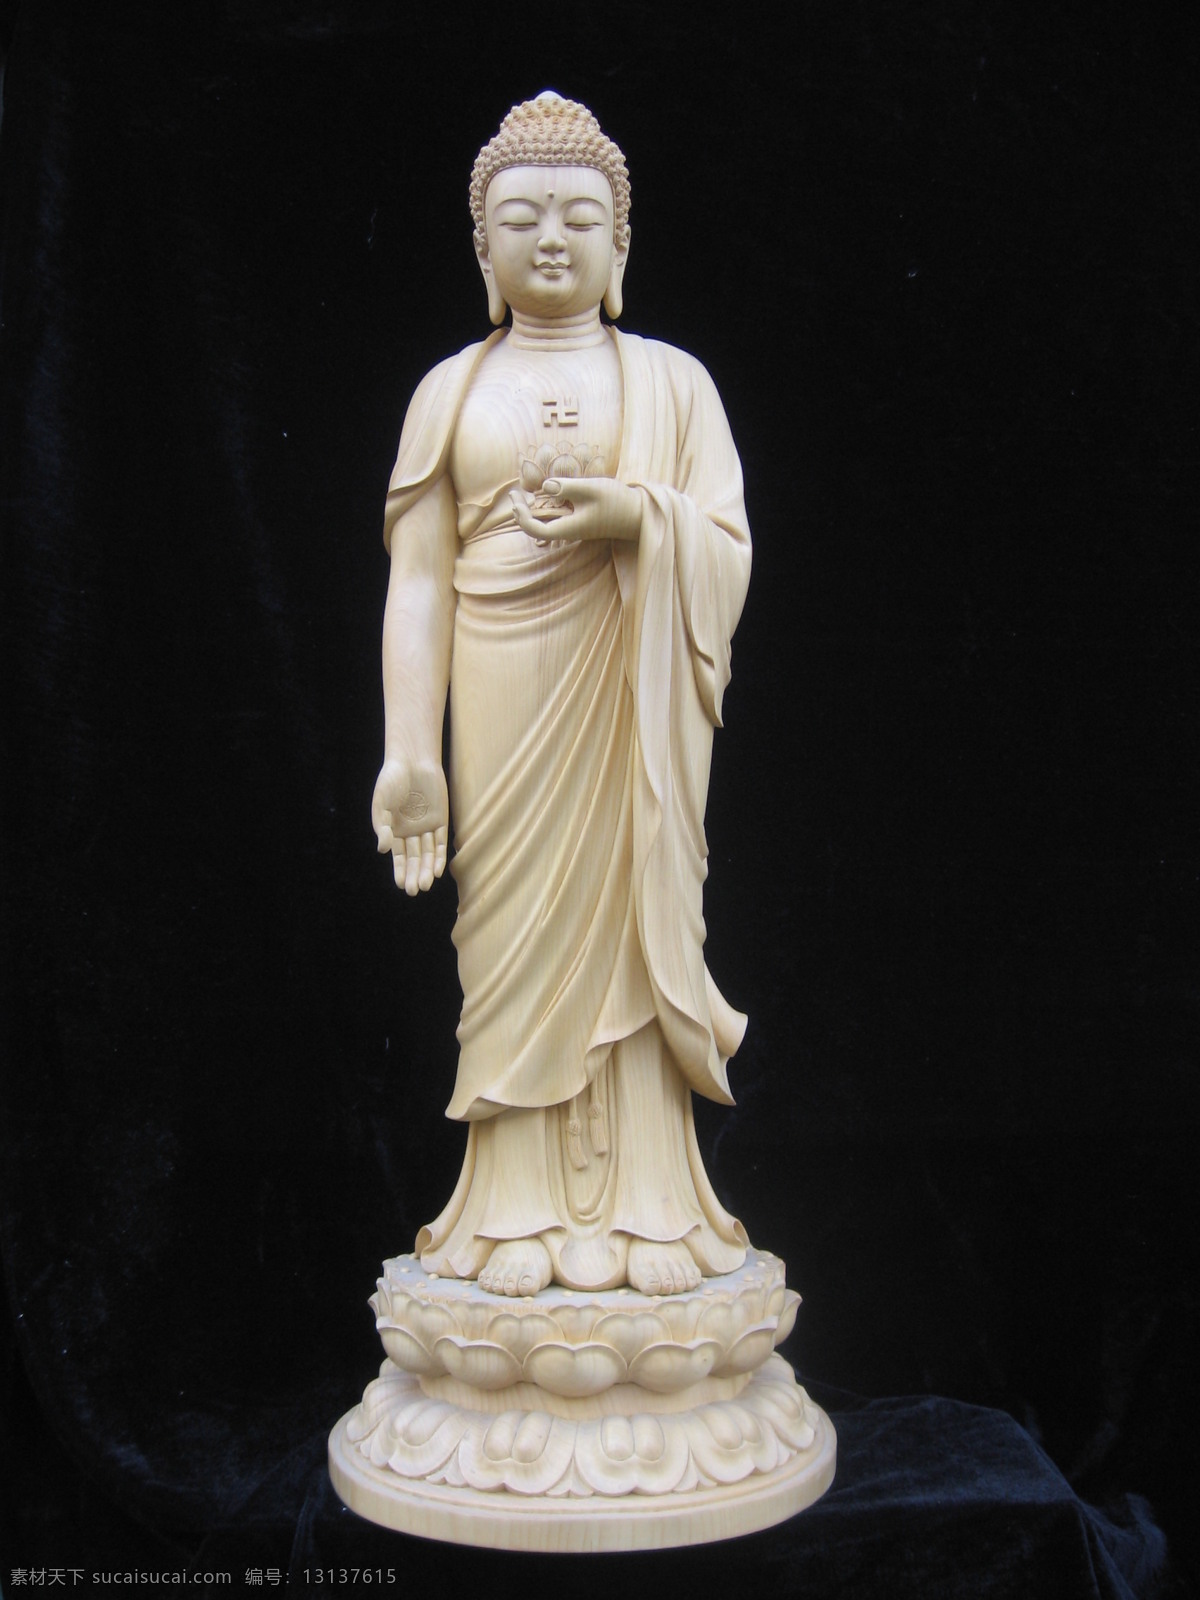 阿弥陀佛 西方极乐 佛教 佛像 木雕 宗教信仰 文化艺术